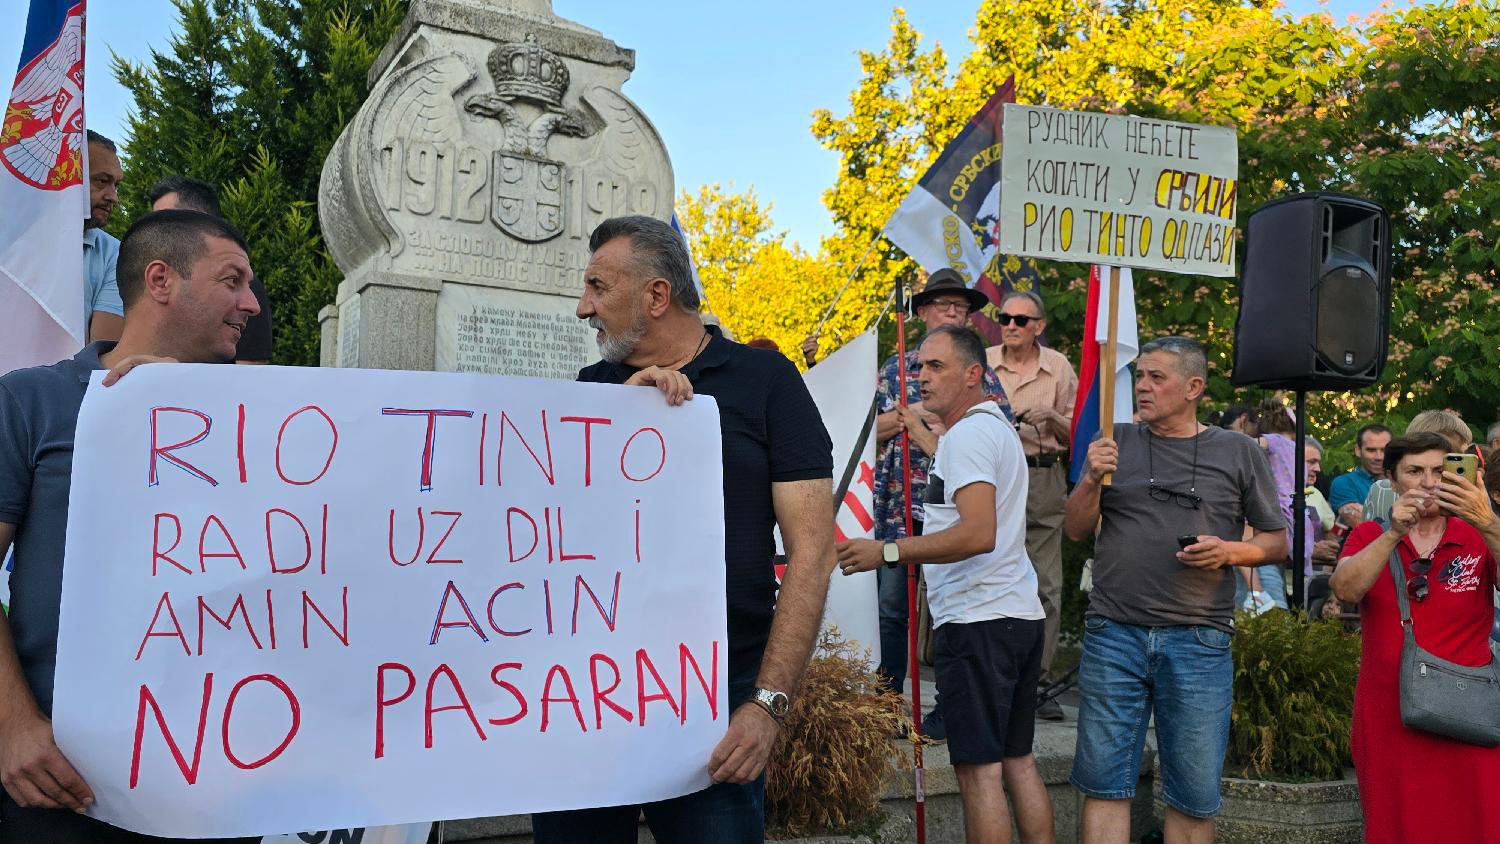 Da li se Vučić uplašio protesta i kako će danas reagovati? 4